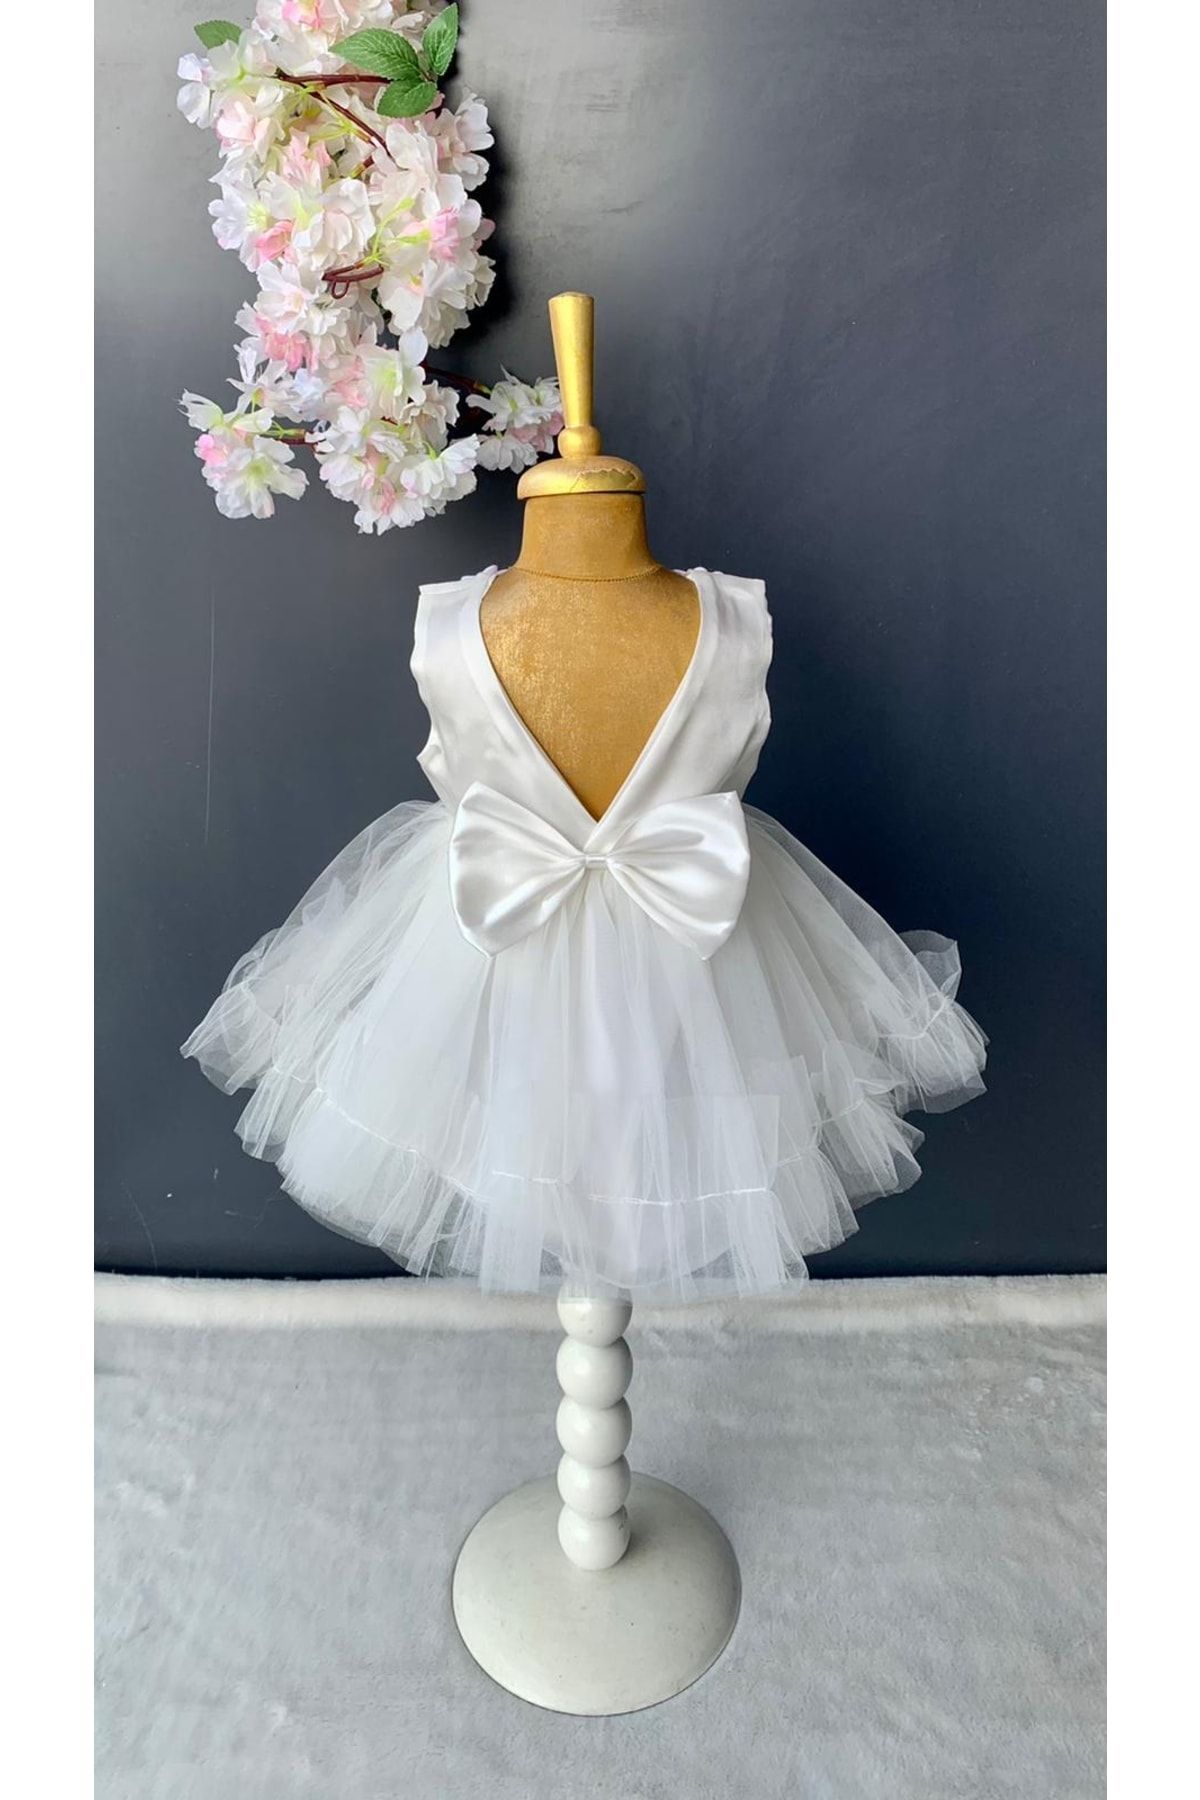 Harry&Millie Petite Ponpon Baby Kız Bebek Yenidoğan Çiçekli Mevlüt Elbisesi Özel Gün Kıyafeti